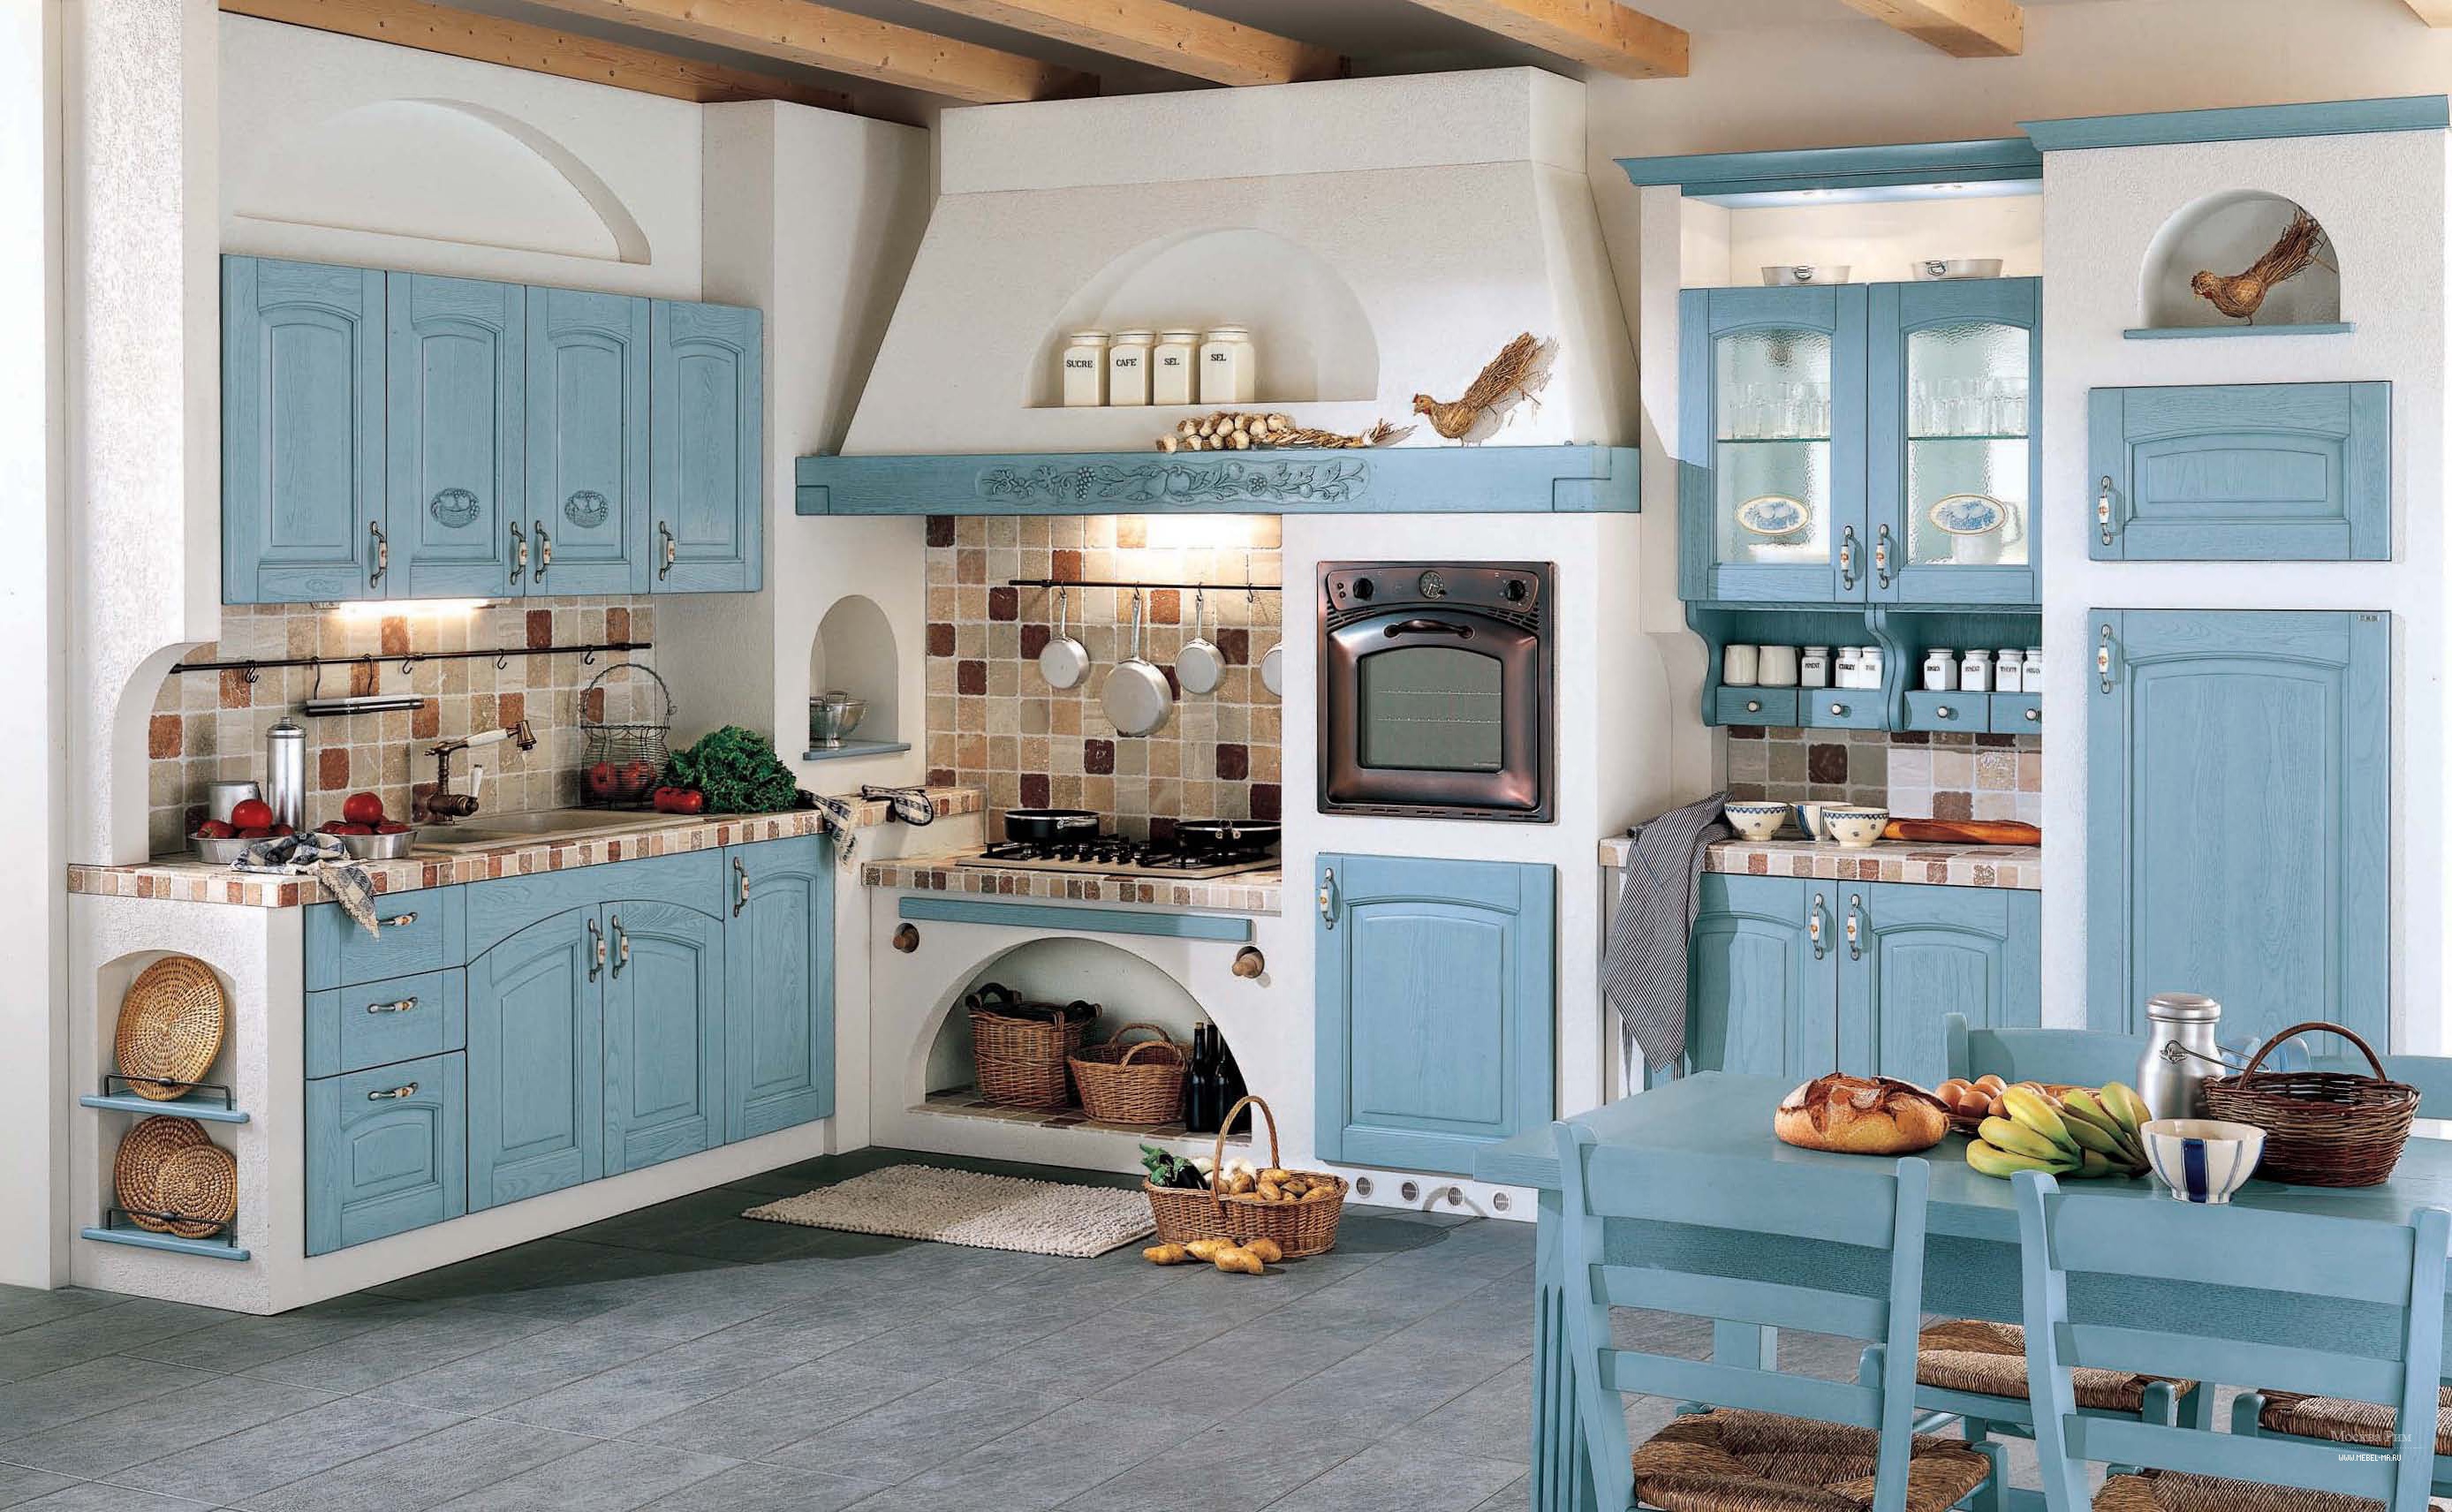 Цвет кухни прованс. Кухня в Тосканском стиле Кантри. Голубая кухня Прованс Антарес. Кухня Кантри Прованс Неоклассика голубая. Кухни Кантри Прованс.